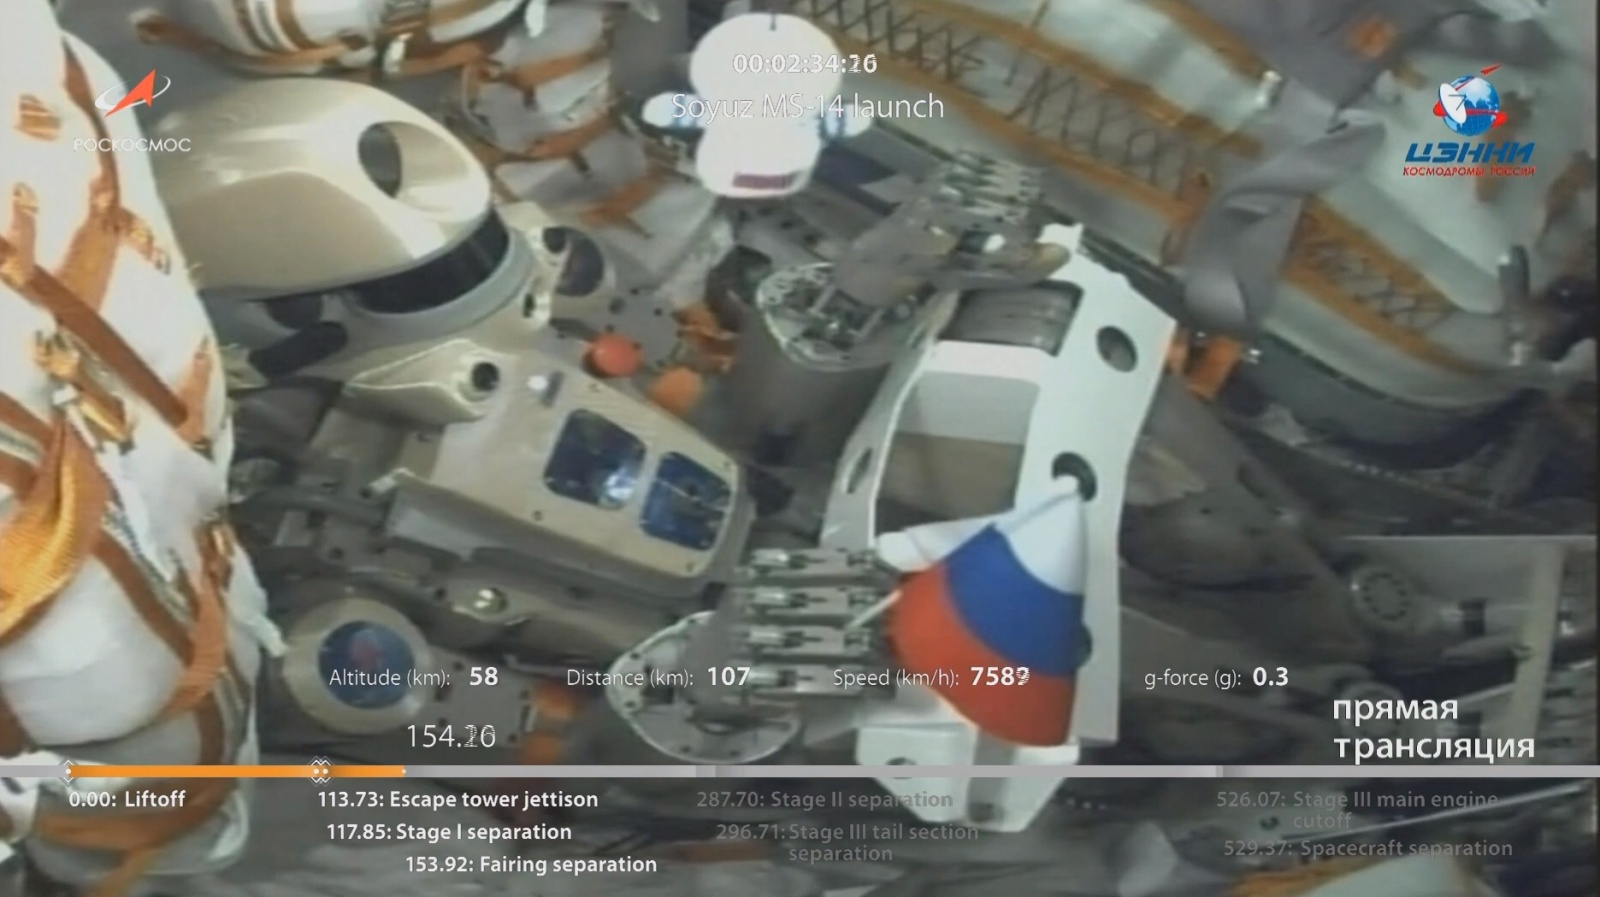 Успешно запущен на орбиту корабль «Союз МС-14» с роботом FEDOR (Skybot F-850) - 7